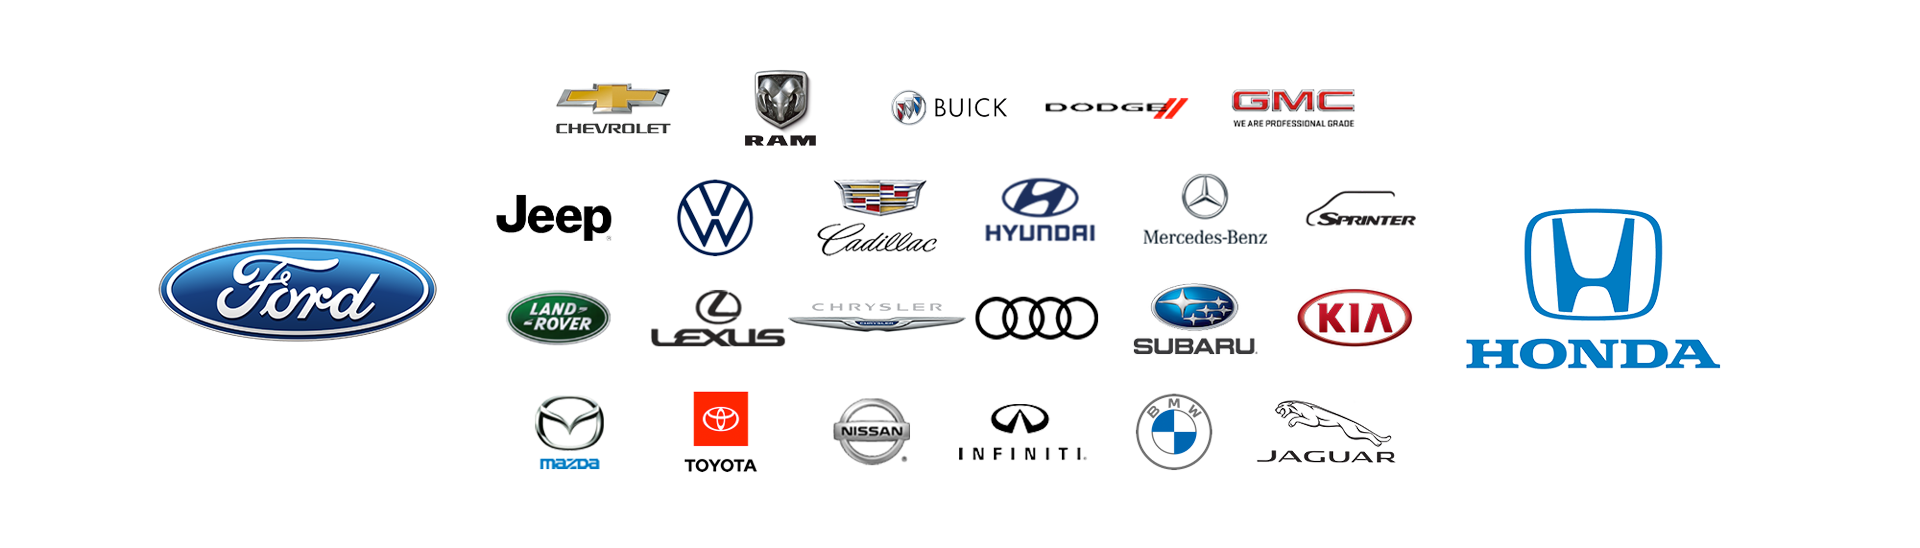 body repair vehicle logos